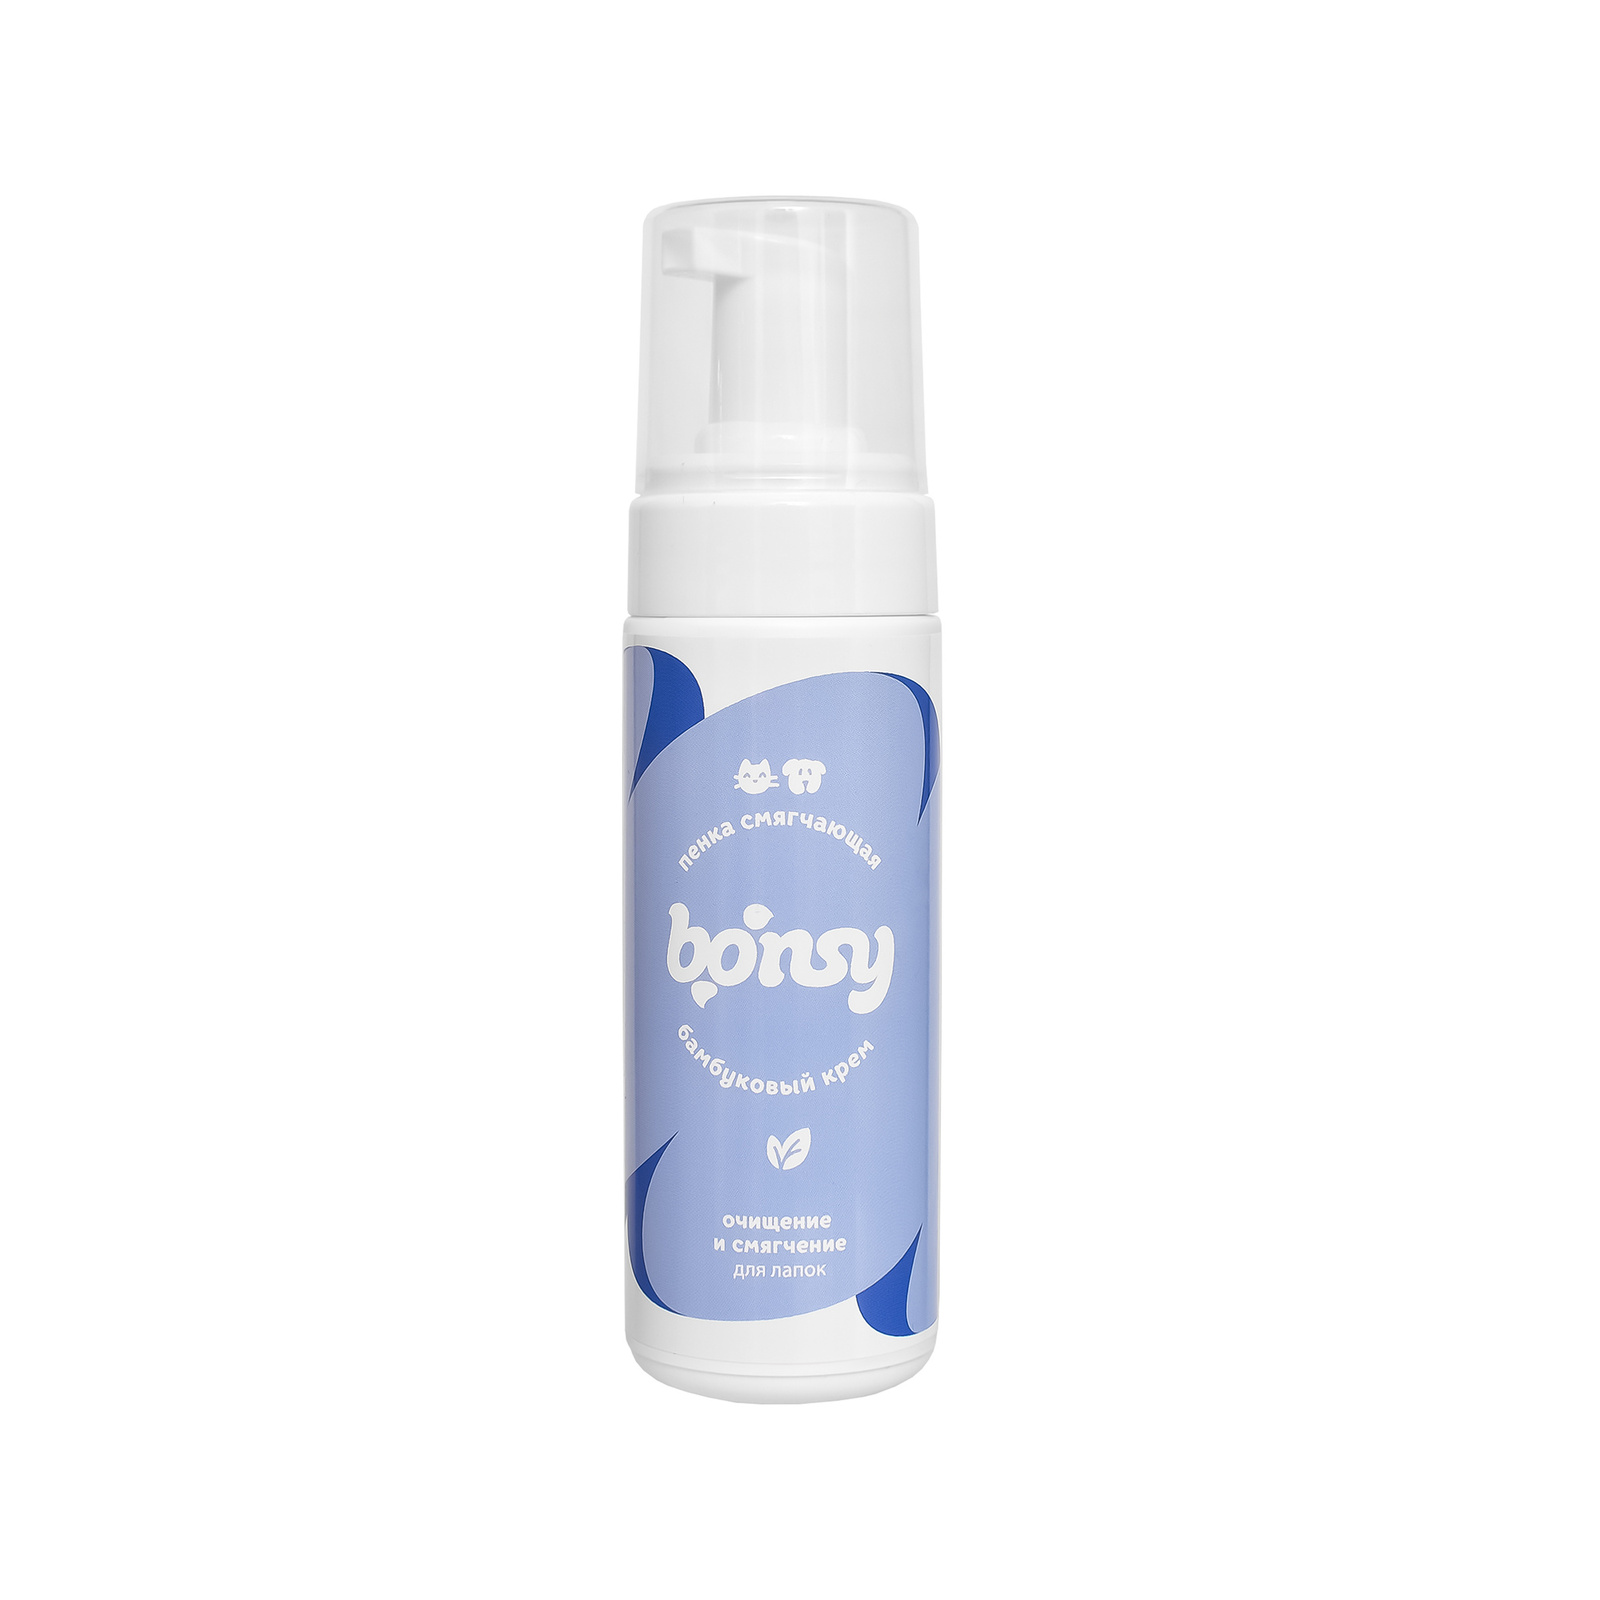 Bonsy пенка для лап:  очищение и смягчение с ароматом 